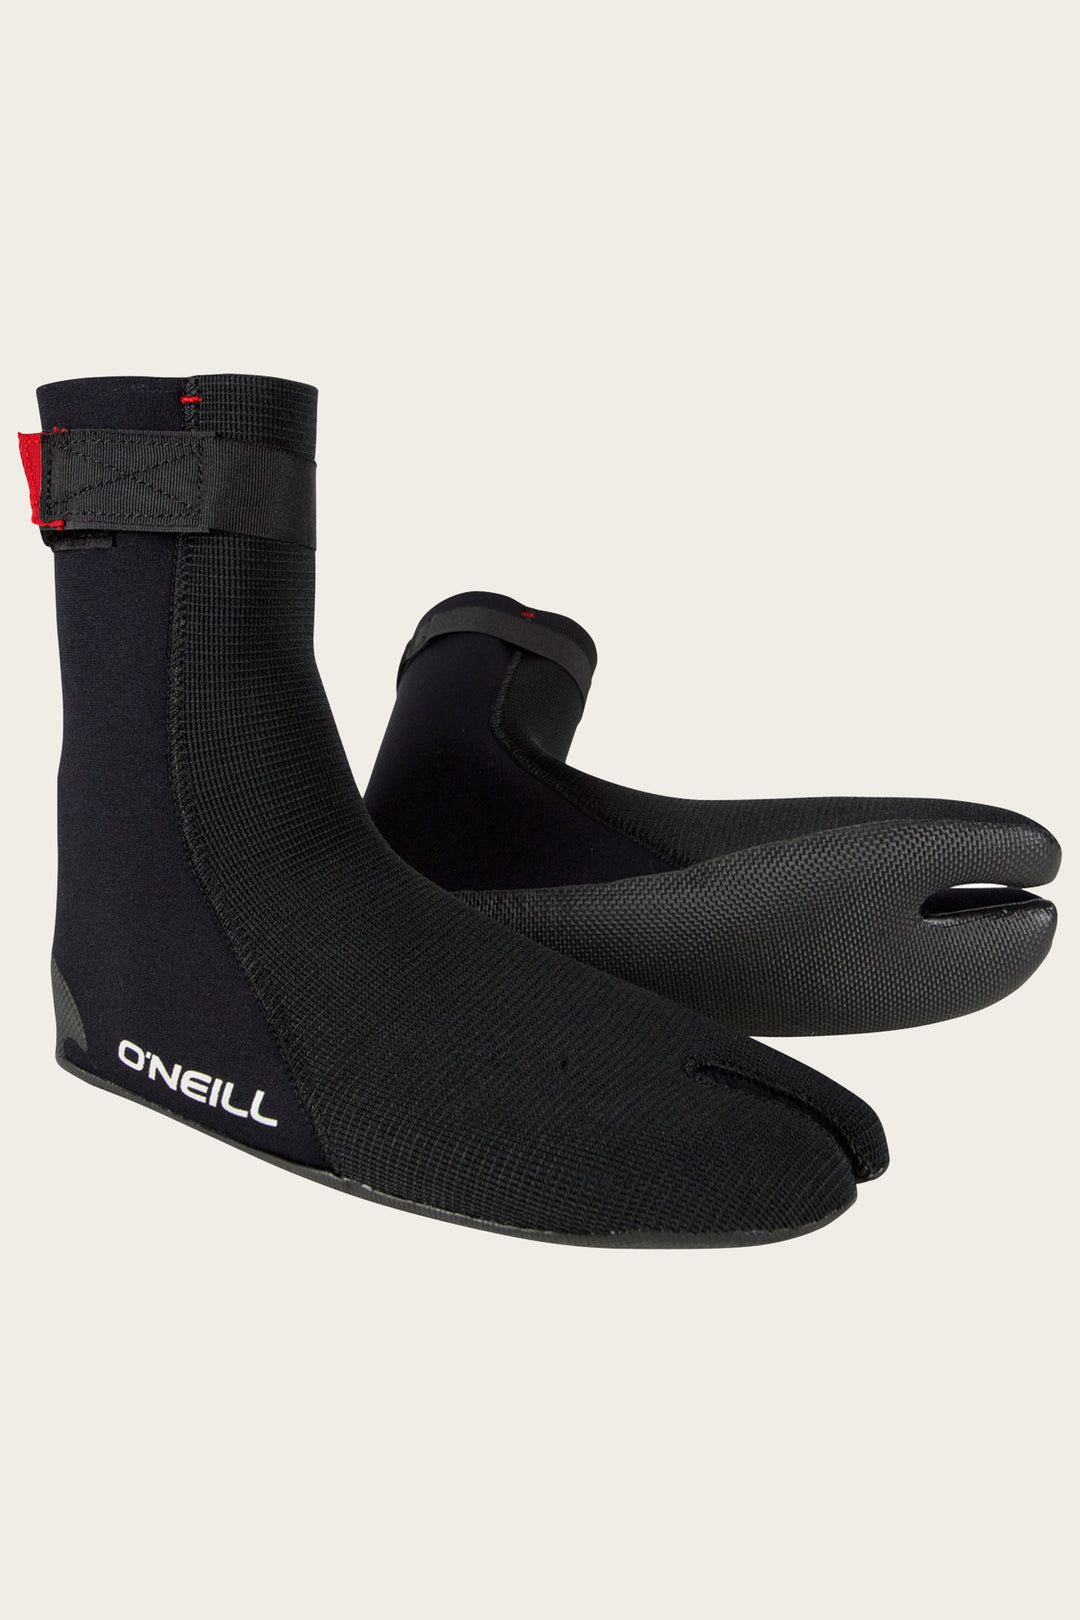 Ninja ST 3mm Boot-O'Neill-black,boot,booties,logo,o'neill,oneill wetsuit,wetsuit